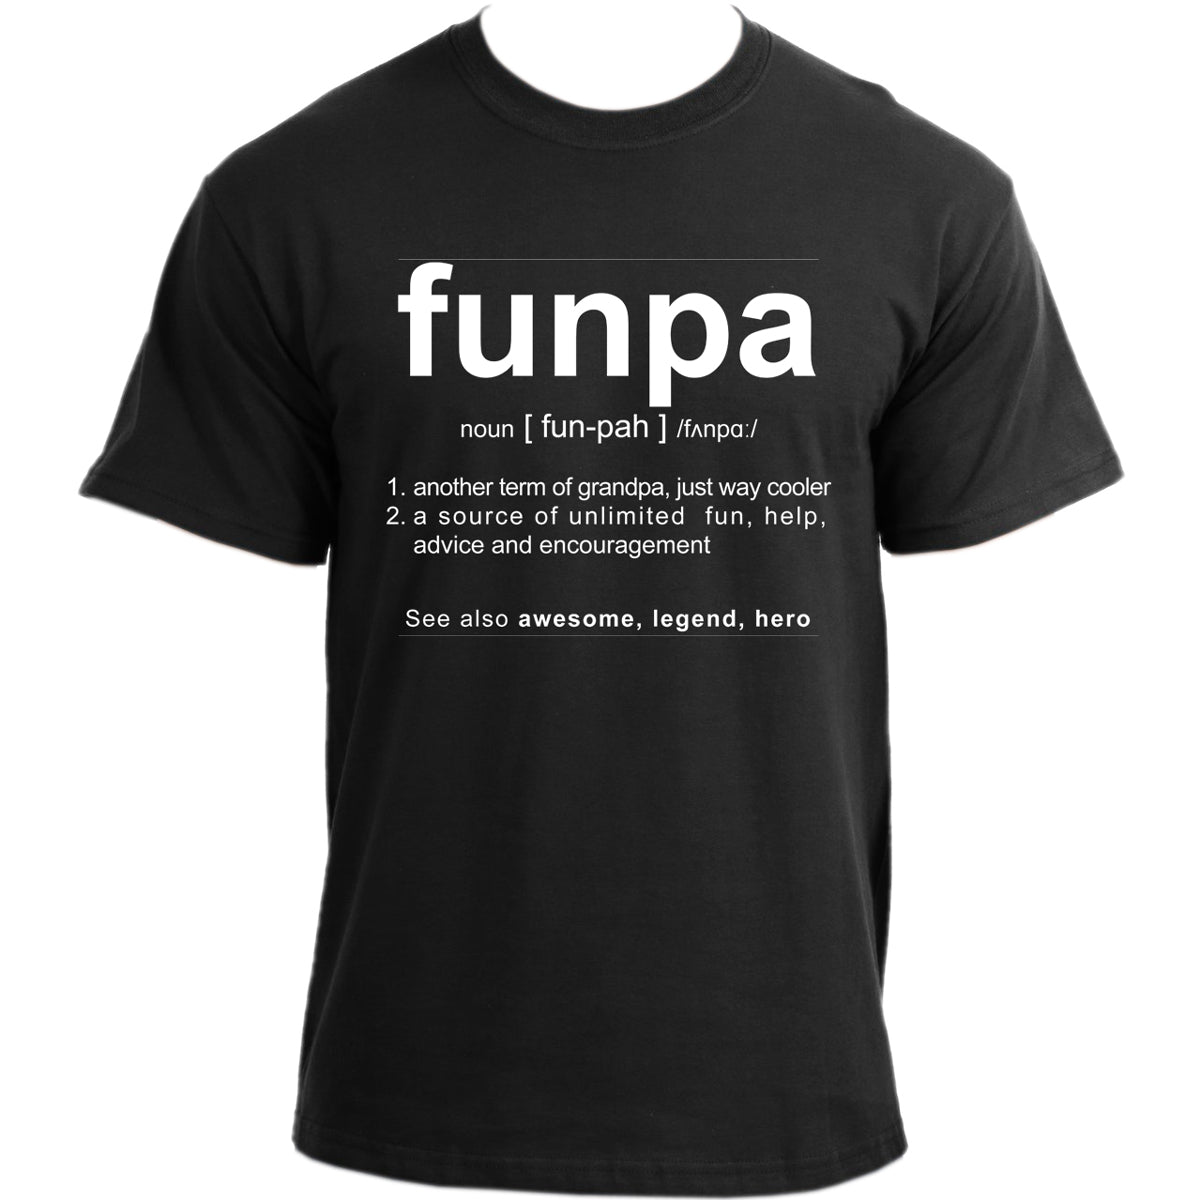 Funpa T-Shirt I Grandpa Definition T Shirt I Grandfather Humor Cool Very Funny Grampa Tshirt